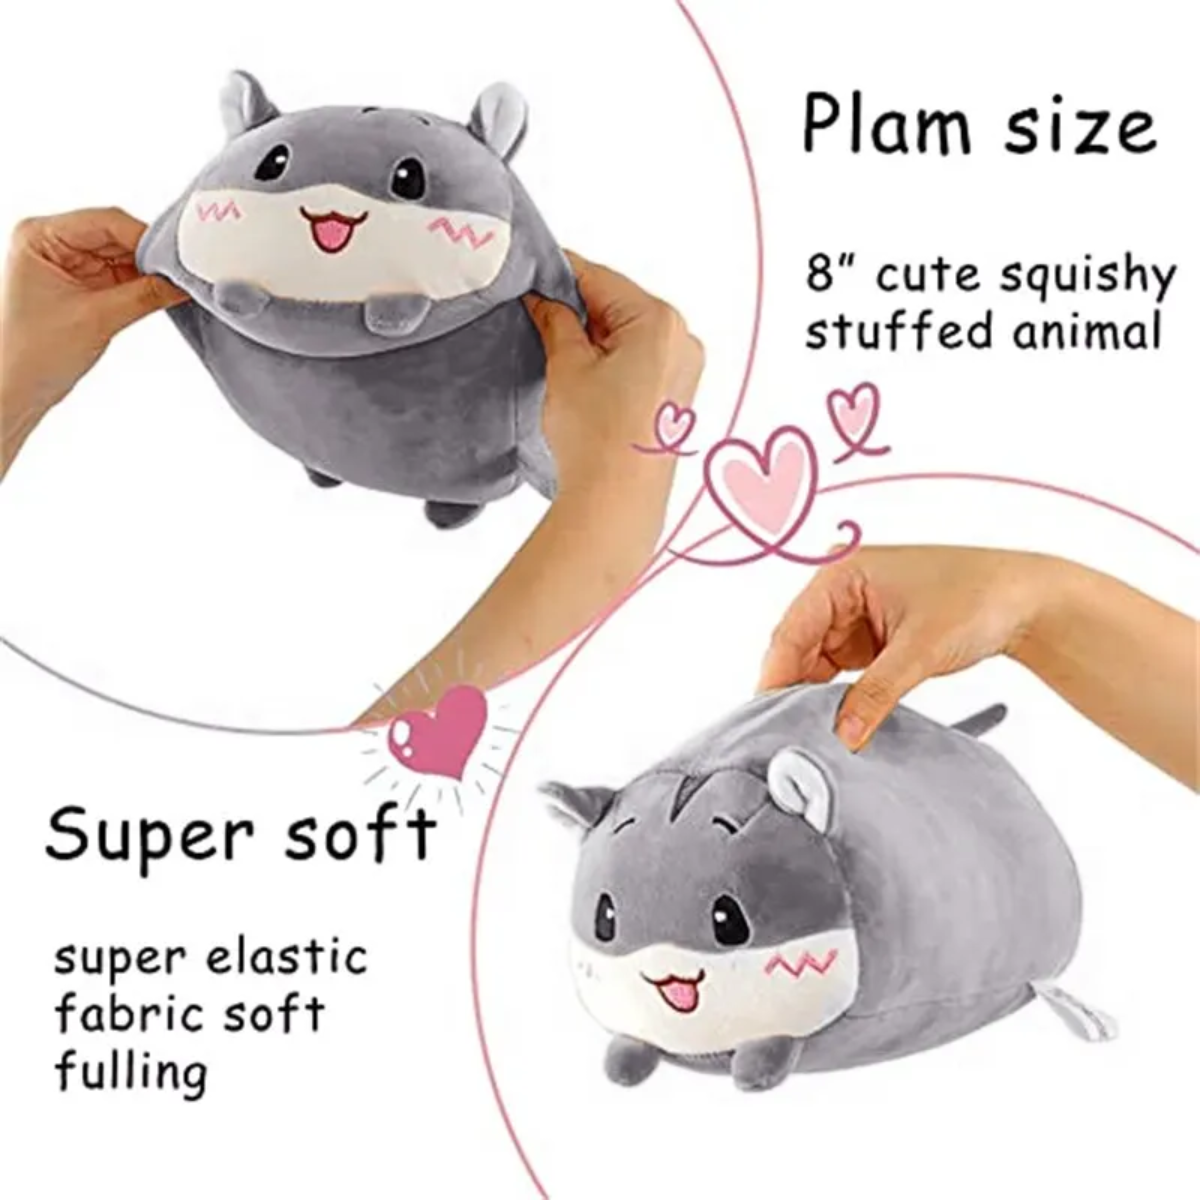 Snuggle-Soft Panda Paradise: The Plush Pillow That Hugs You Back!